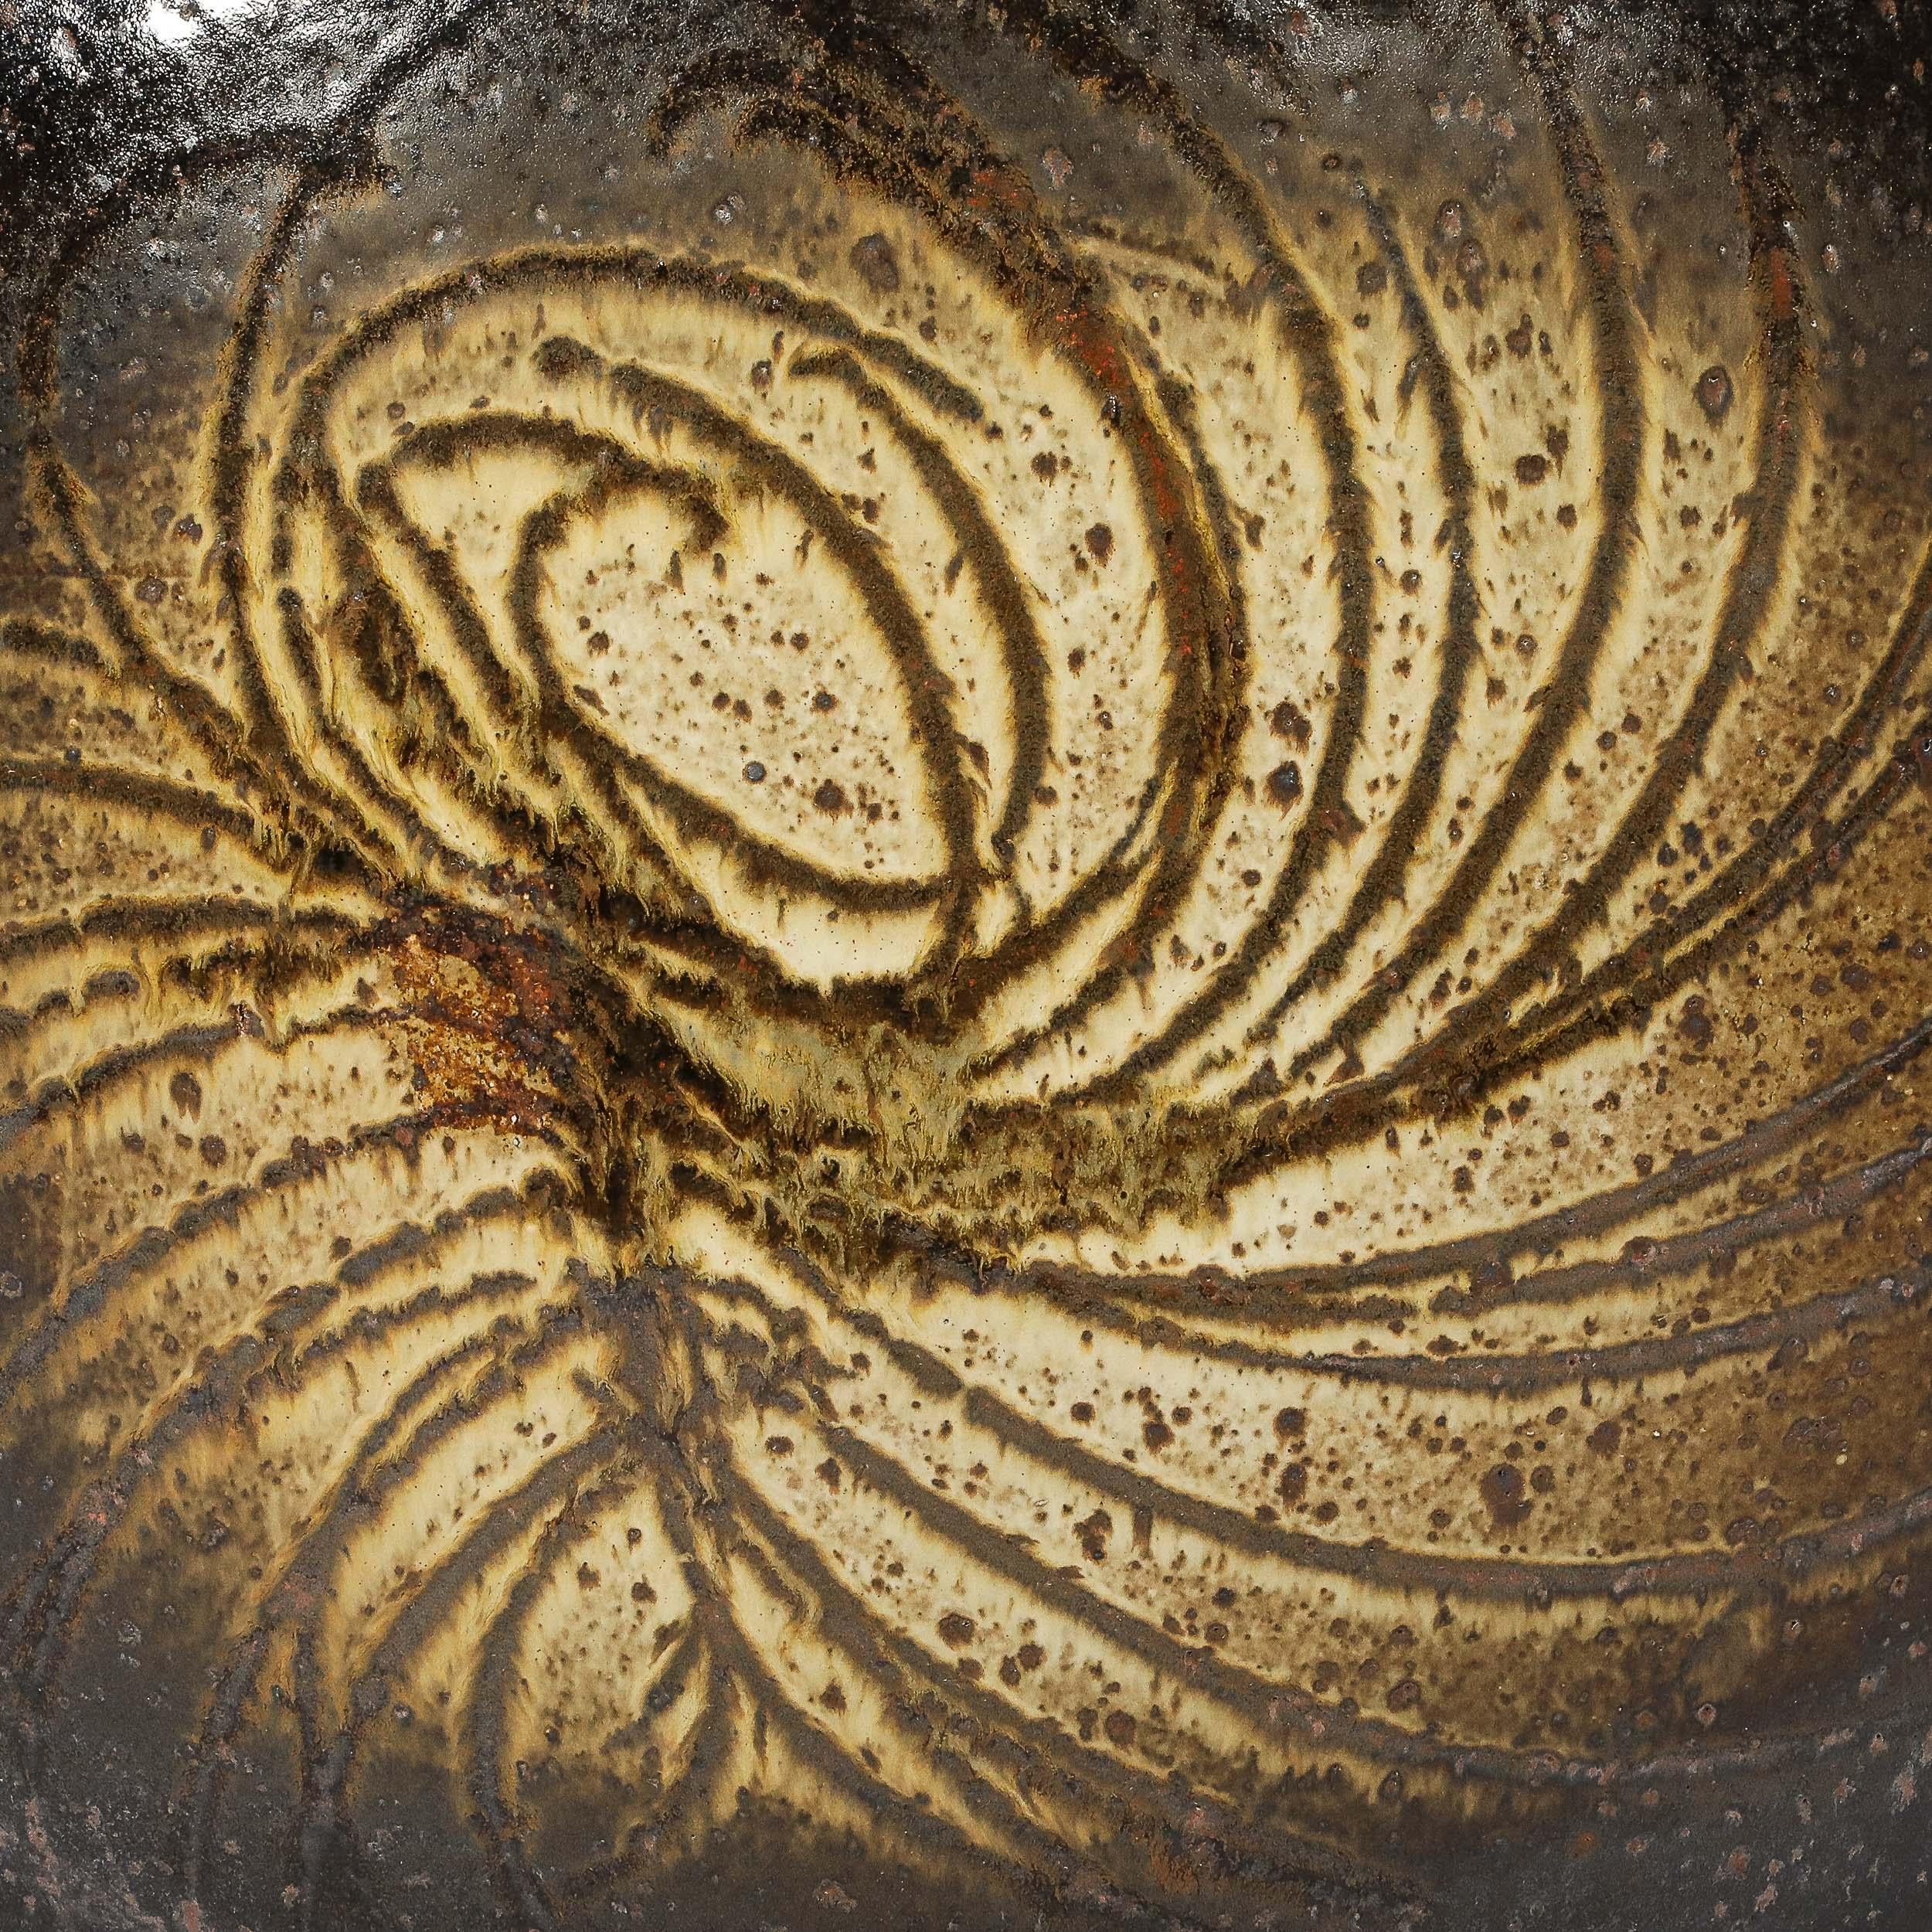 Ce vase en céramique striée d'ambre brûlé, d'une taille puissante et d'une grande beauté matérielle, est signé par Aleph Hammer et provient d'Allemagne, vers 1970. Elle présente un profil ovale vu de face, avec une surface arrondie magnifiquement